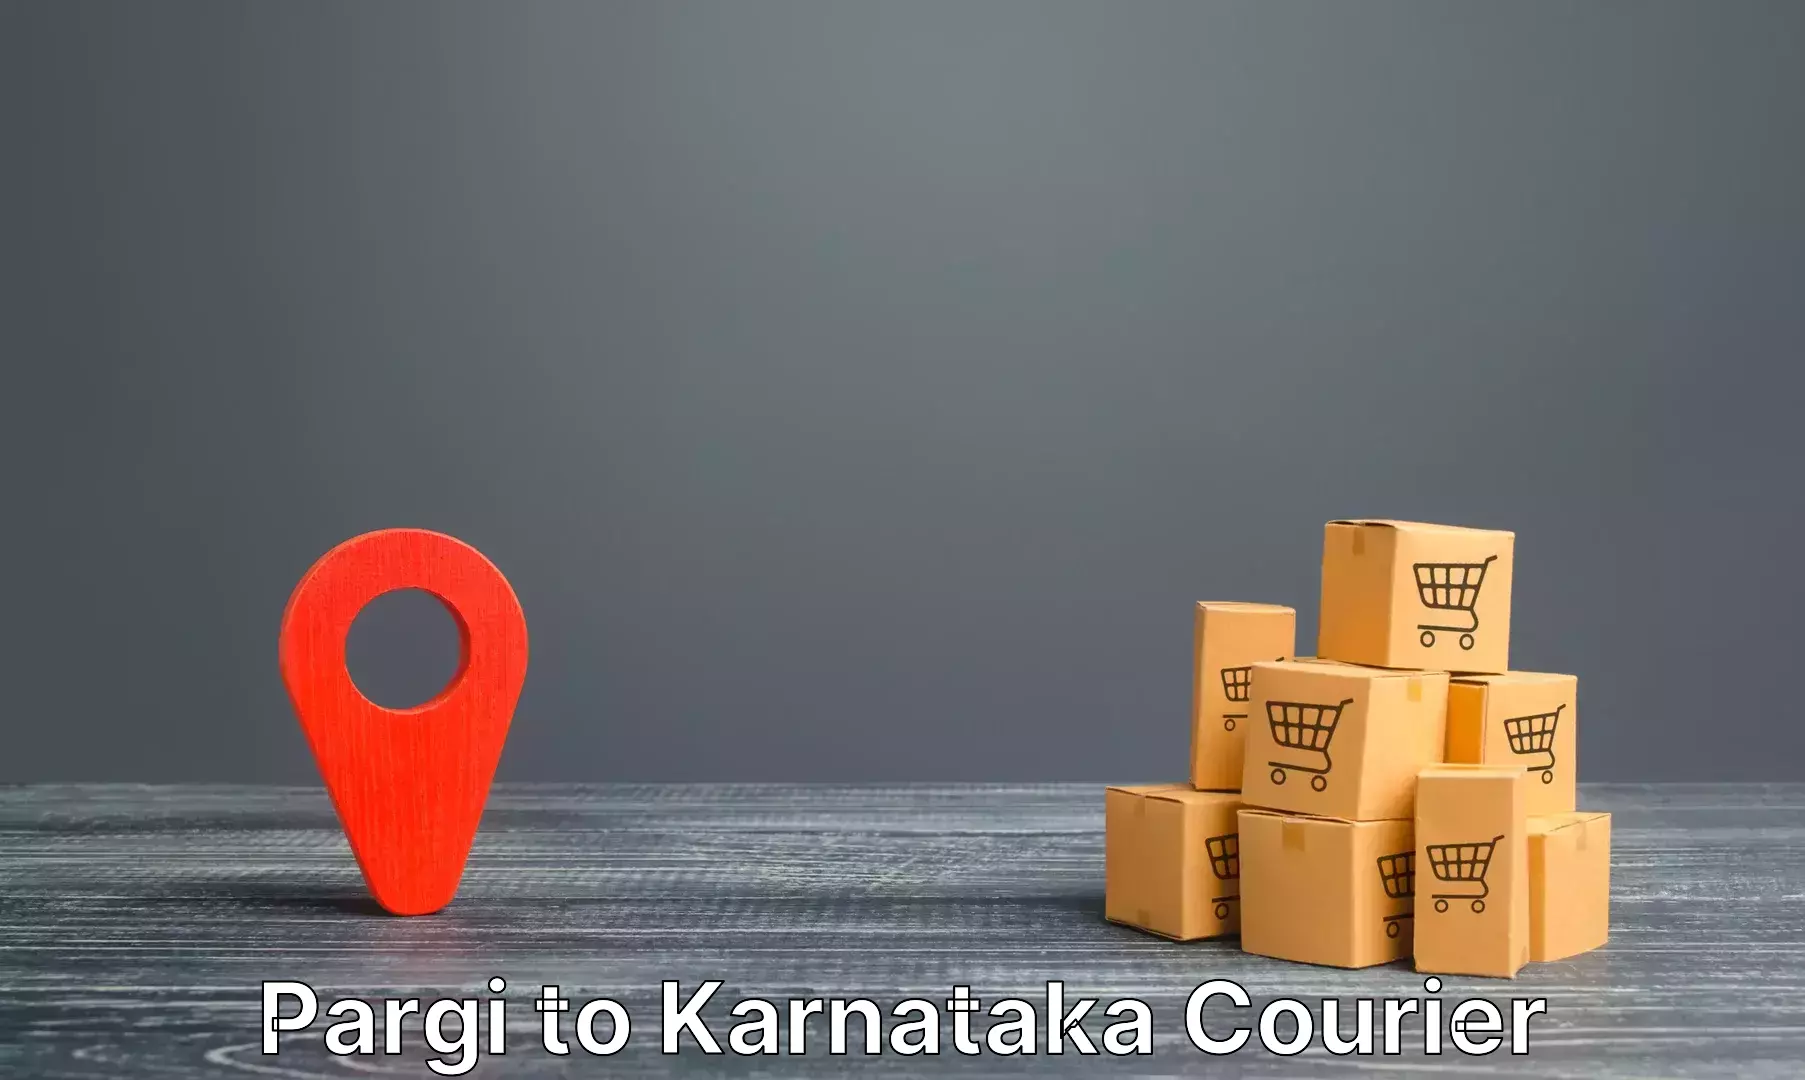 Luggage shipment specialists Pargi to Bangalore